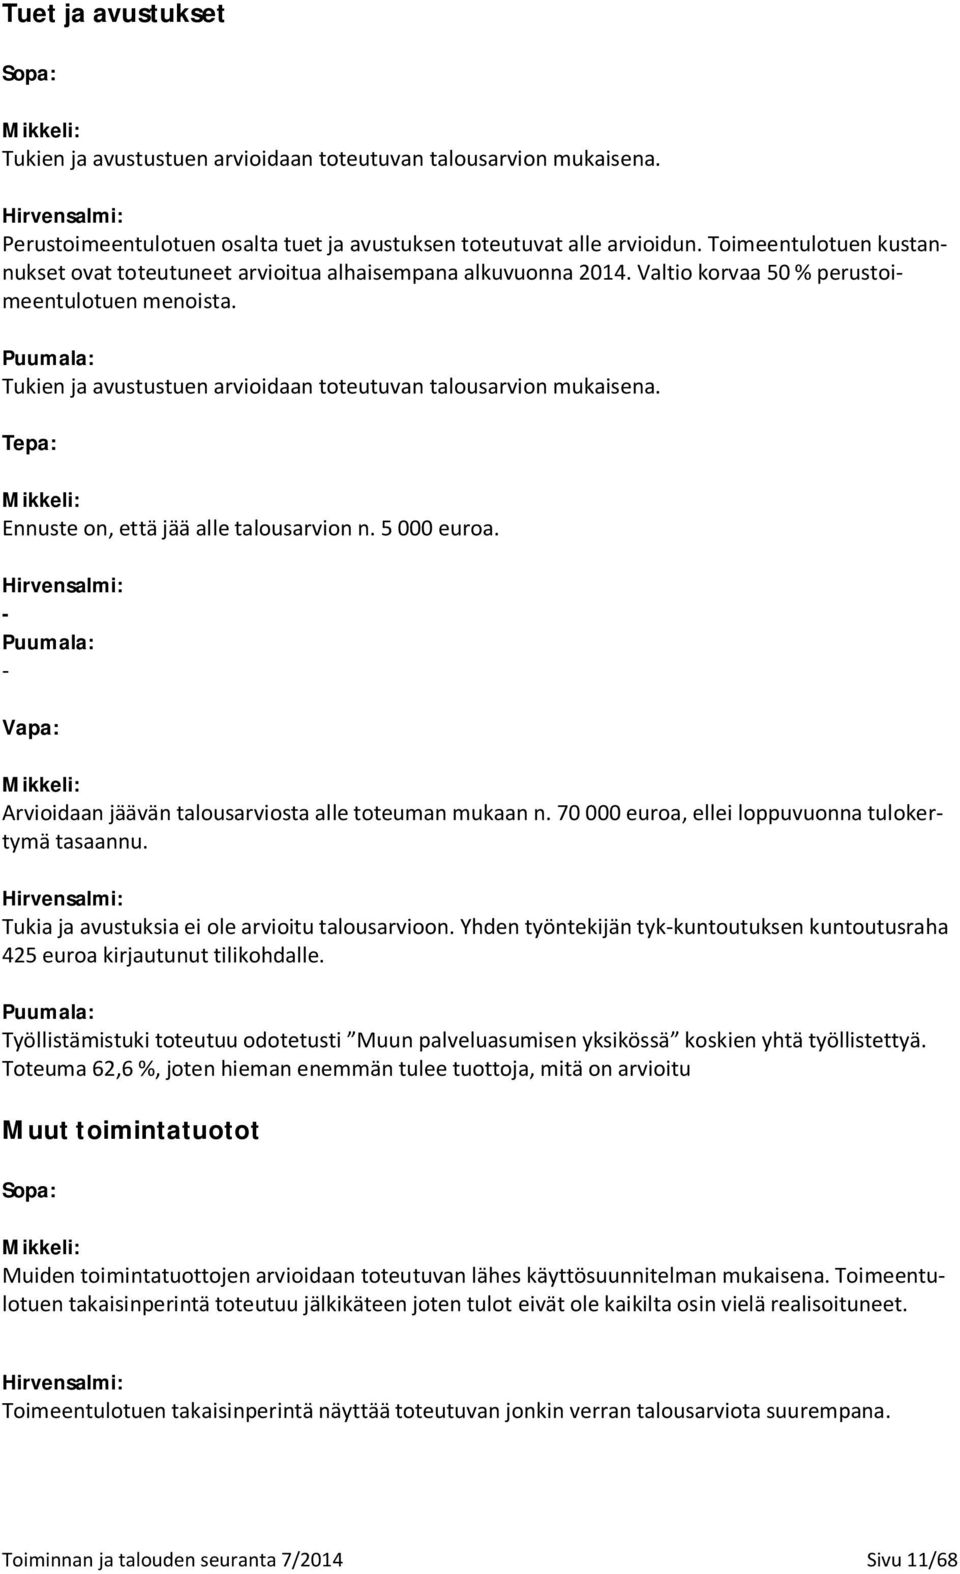 Puumala: Tukien ja avustustuen arvioidaan toteutuvan talousarvion mukaisena. Tepa: Mikkeli: Ennuste on, että jää alle talousarvion n. 5 000 euroa.